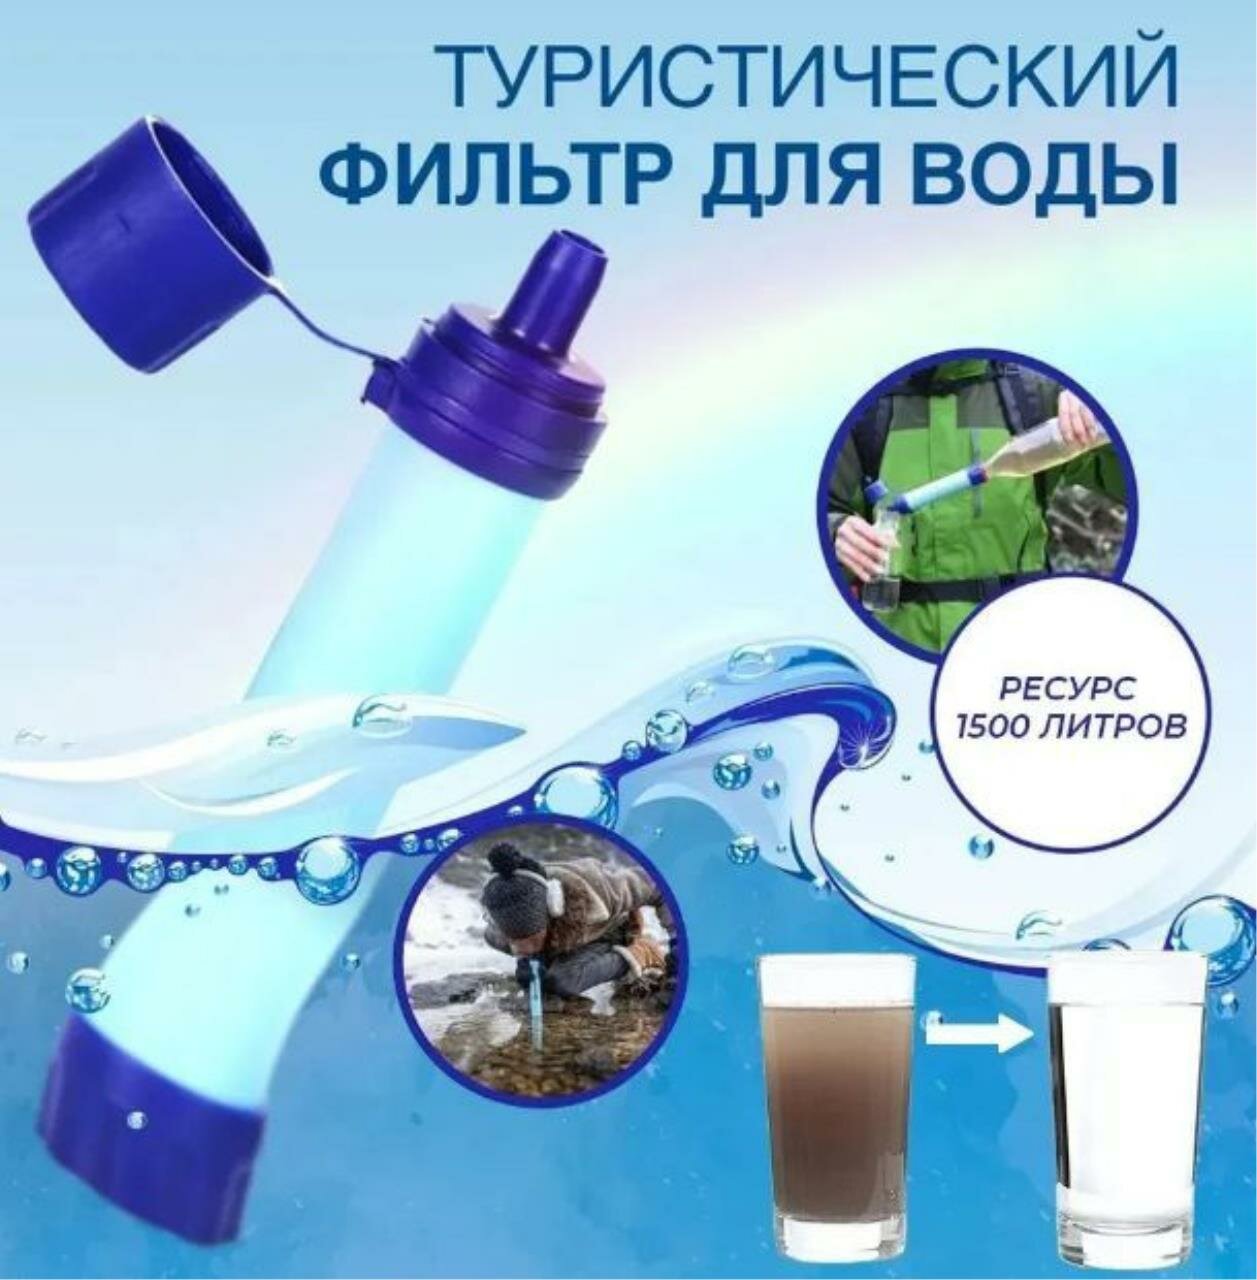 Походный фильтр для воды портативный водоочиститель Туристический фильтр многоразовый - соломинка